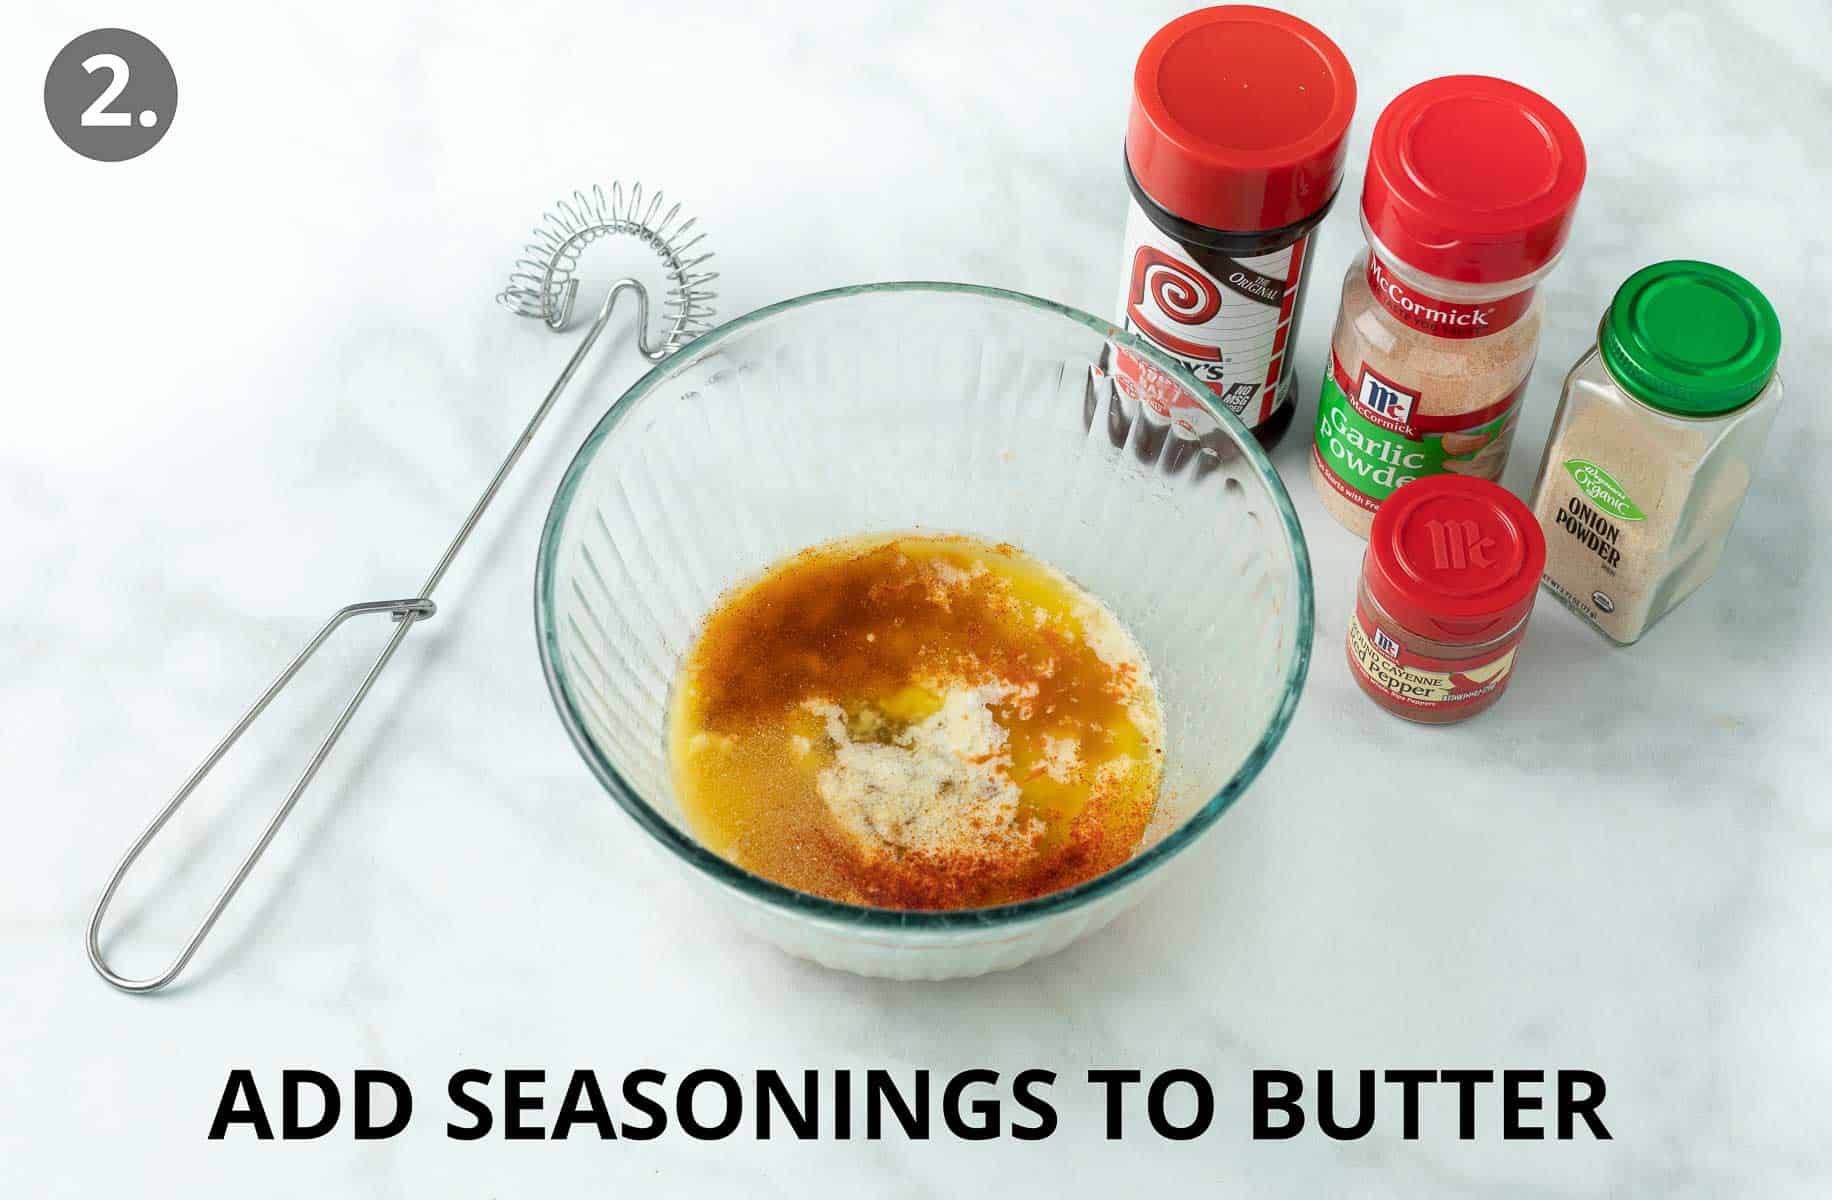 Add seasonings to butter